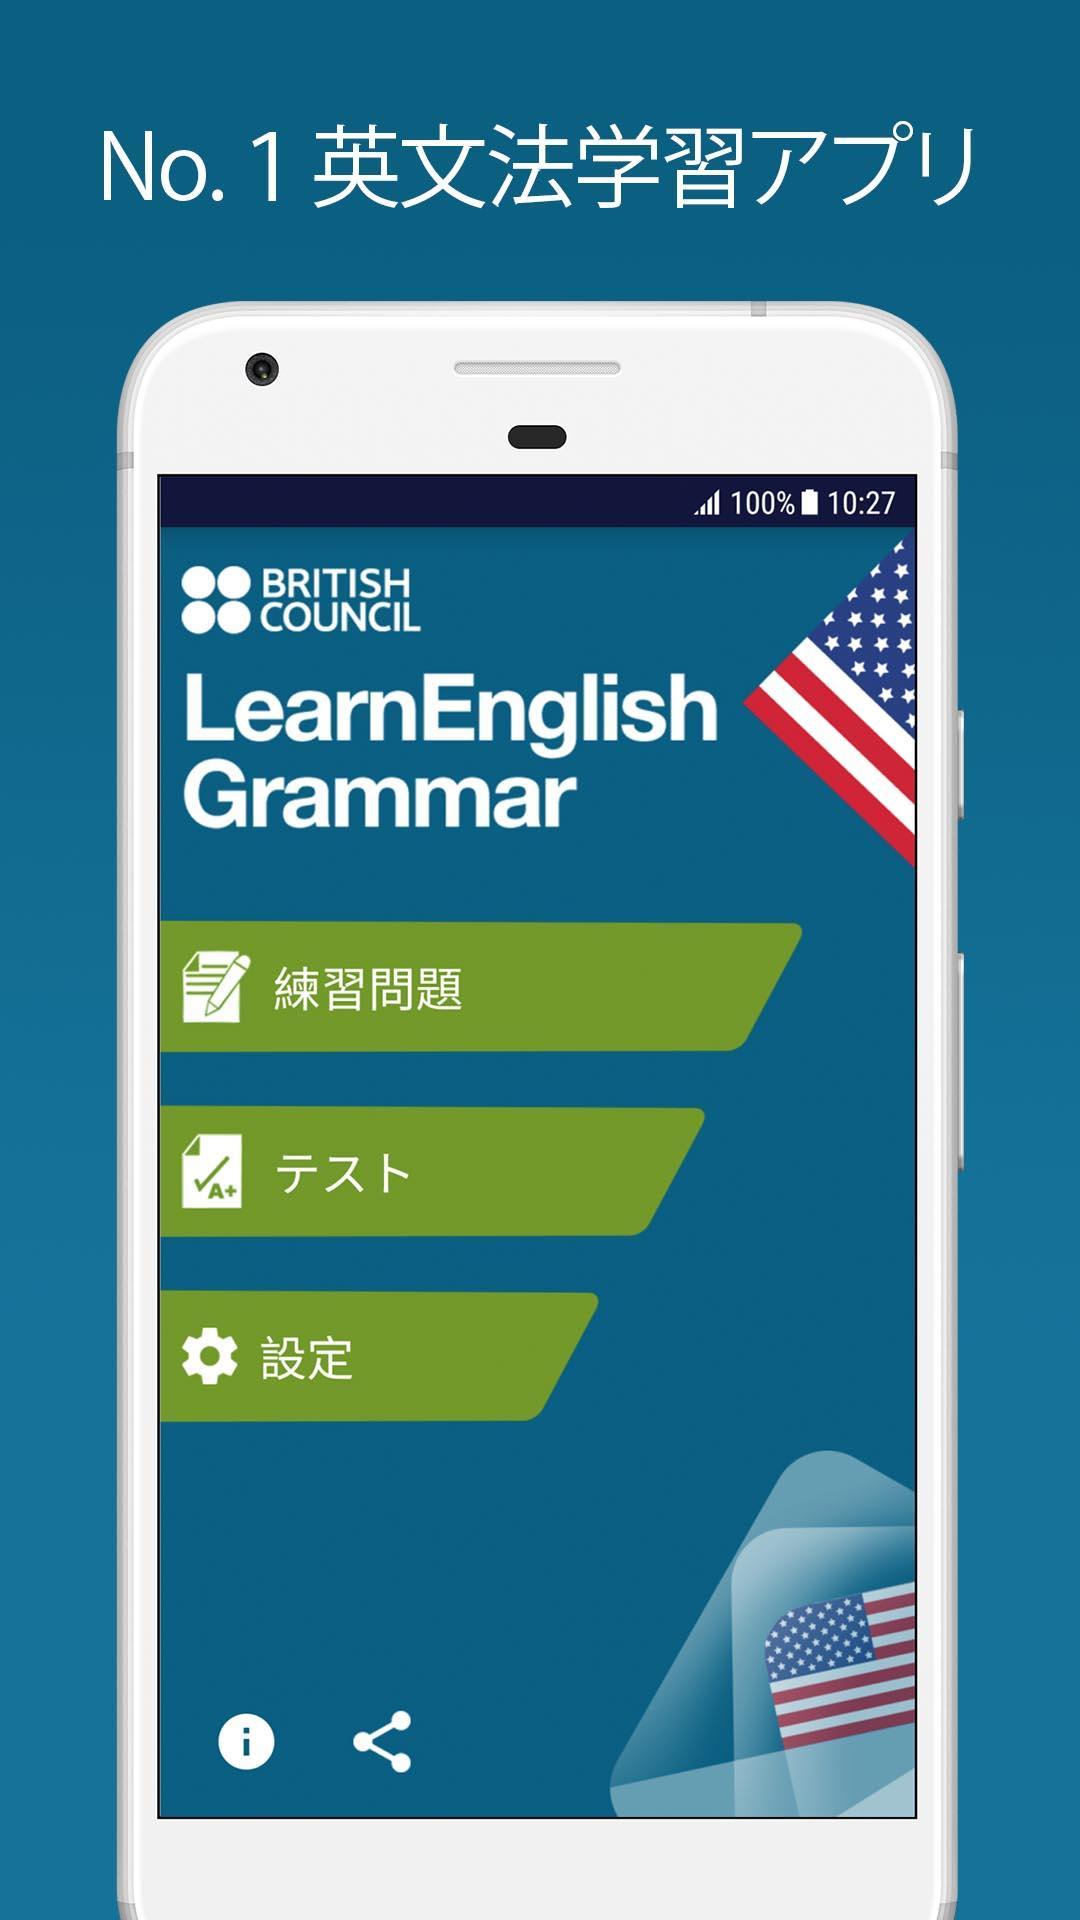 Android 用の Learnenglish 英文法 アメリカ英語版 Apk をダウンロード